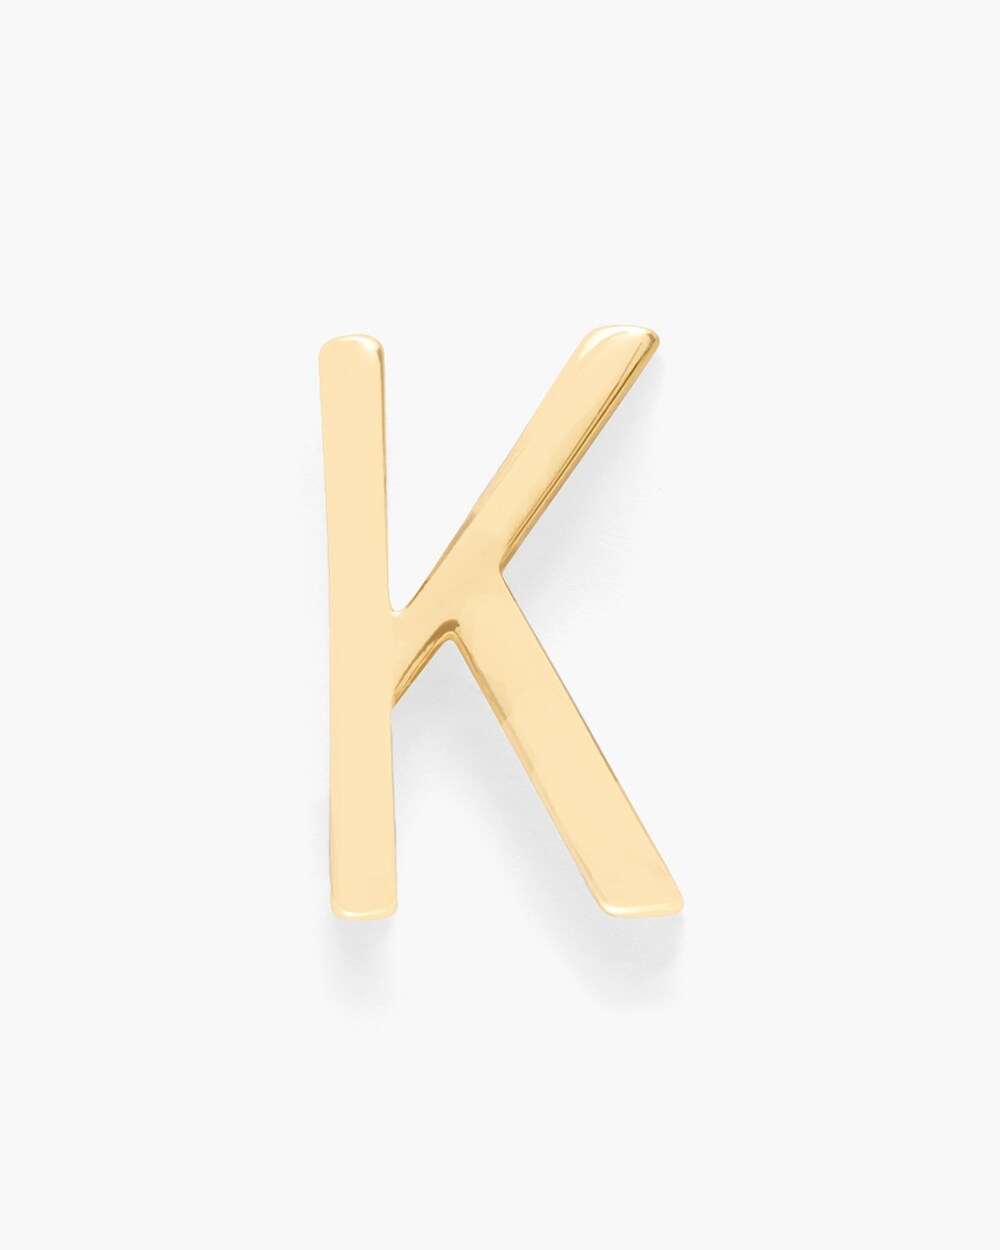 Stick on Letter- K